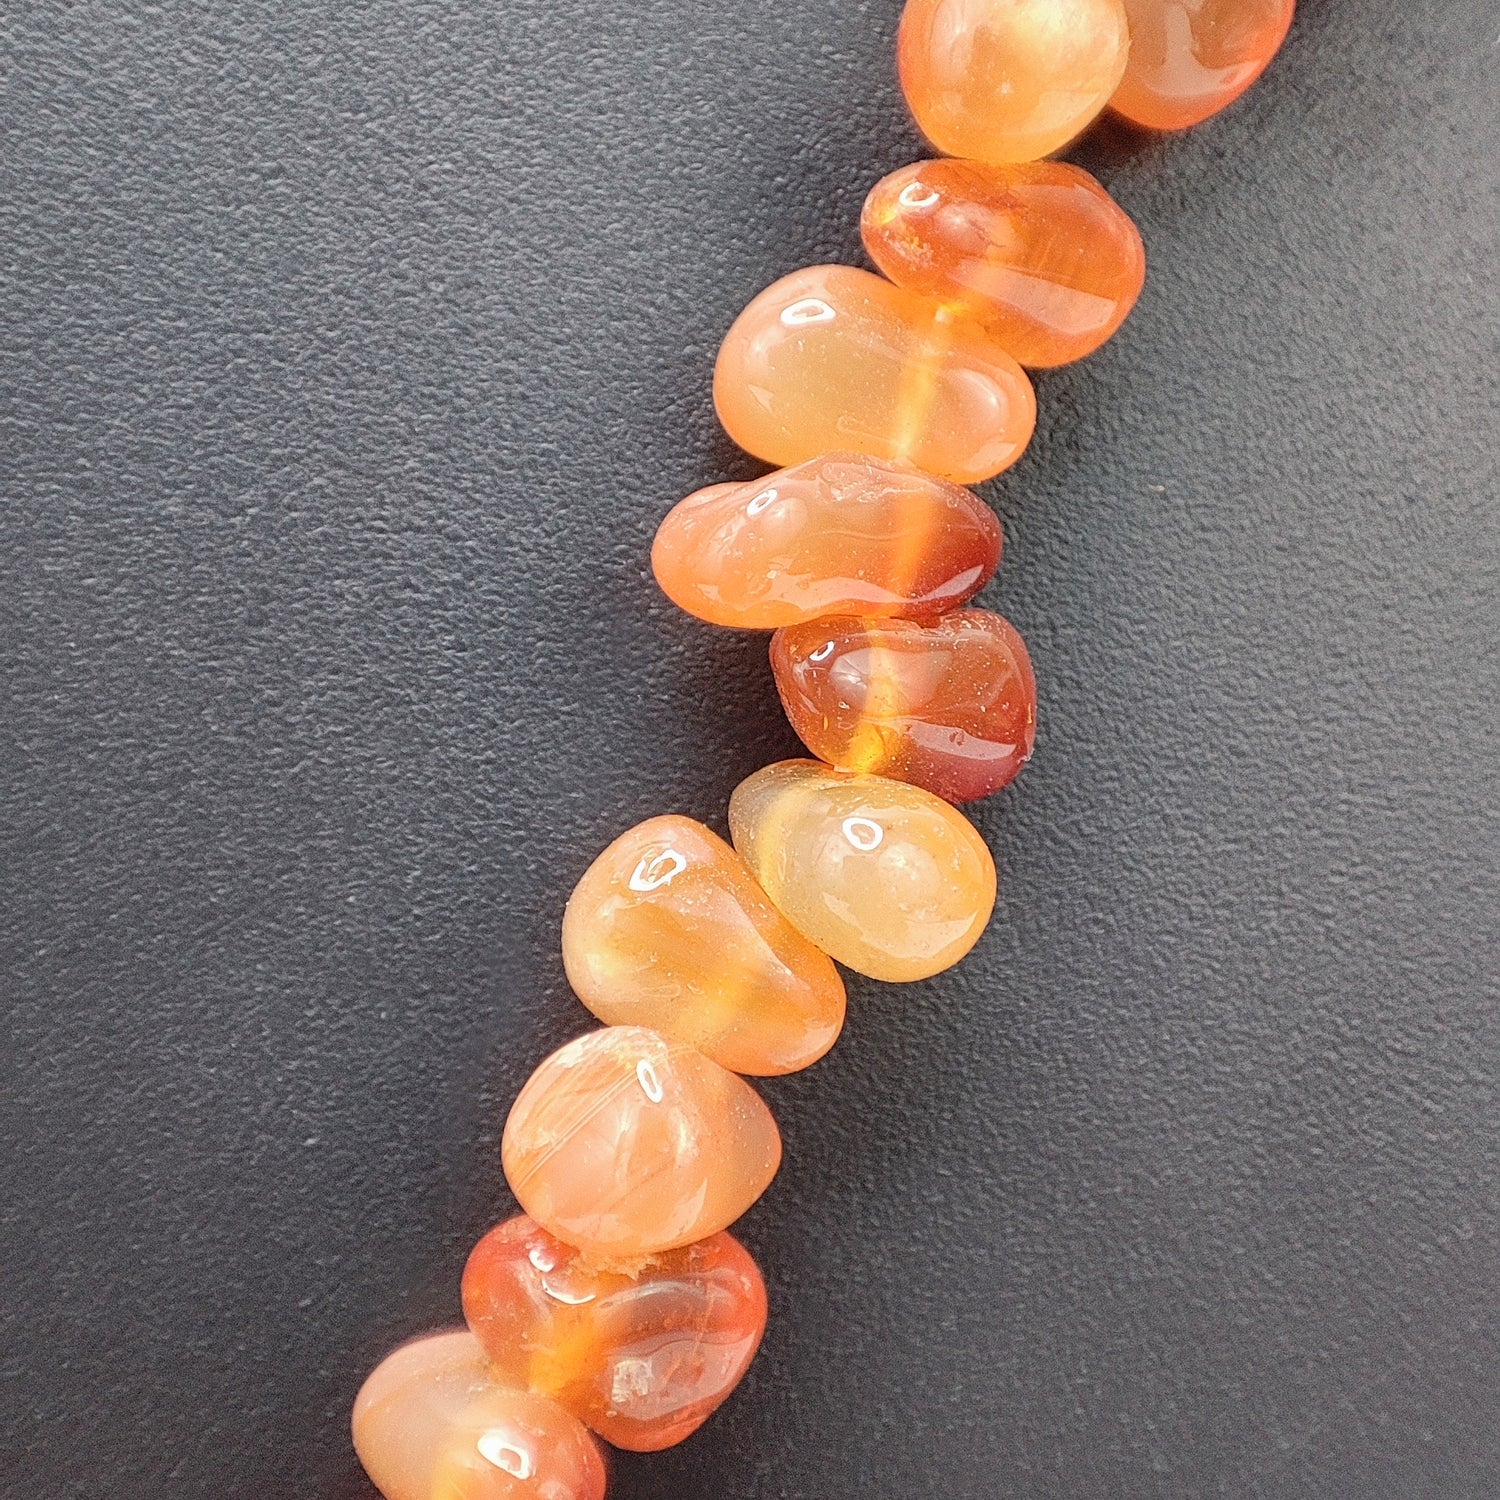 Carnelian Orange Petal Beads Necklace